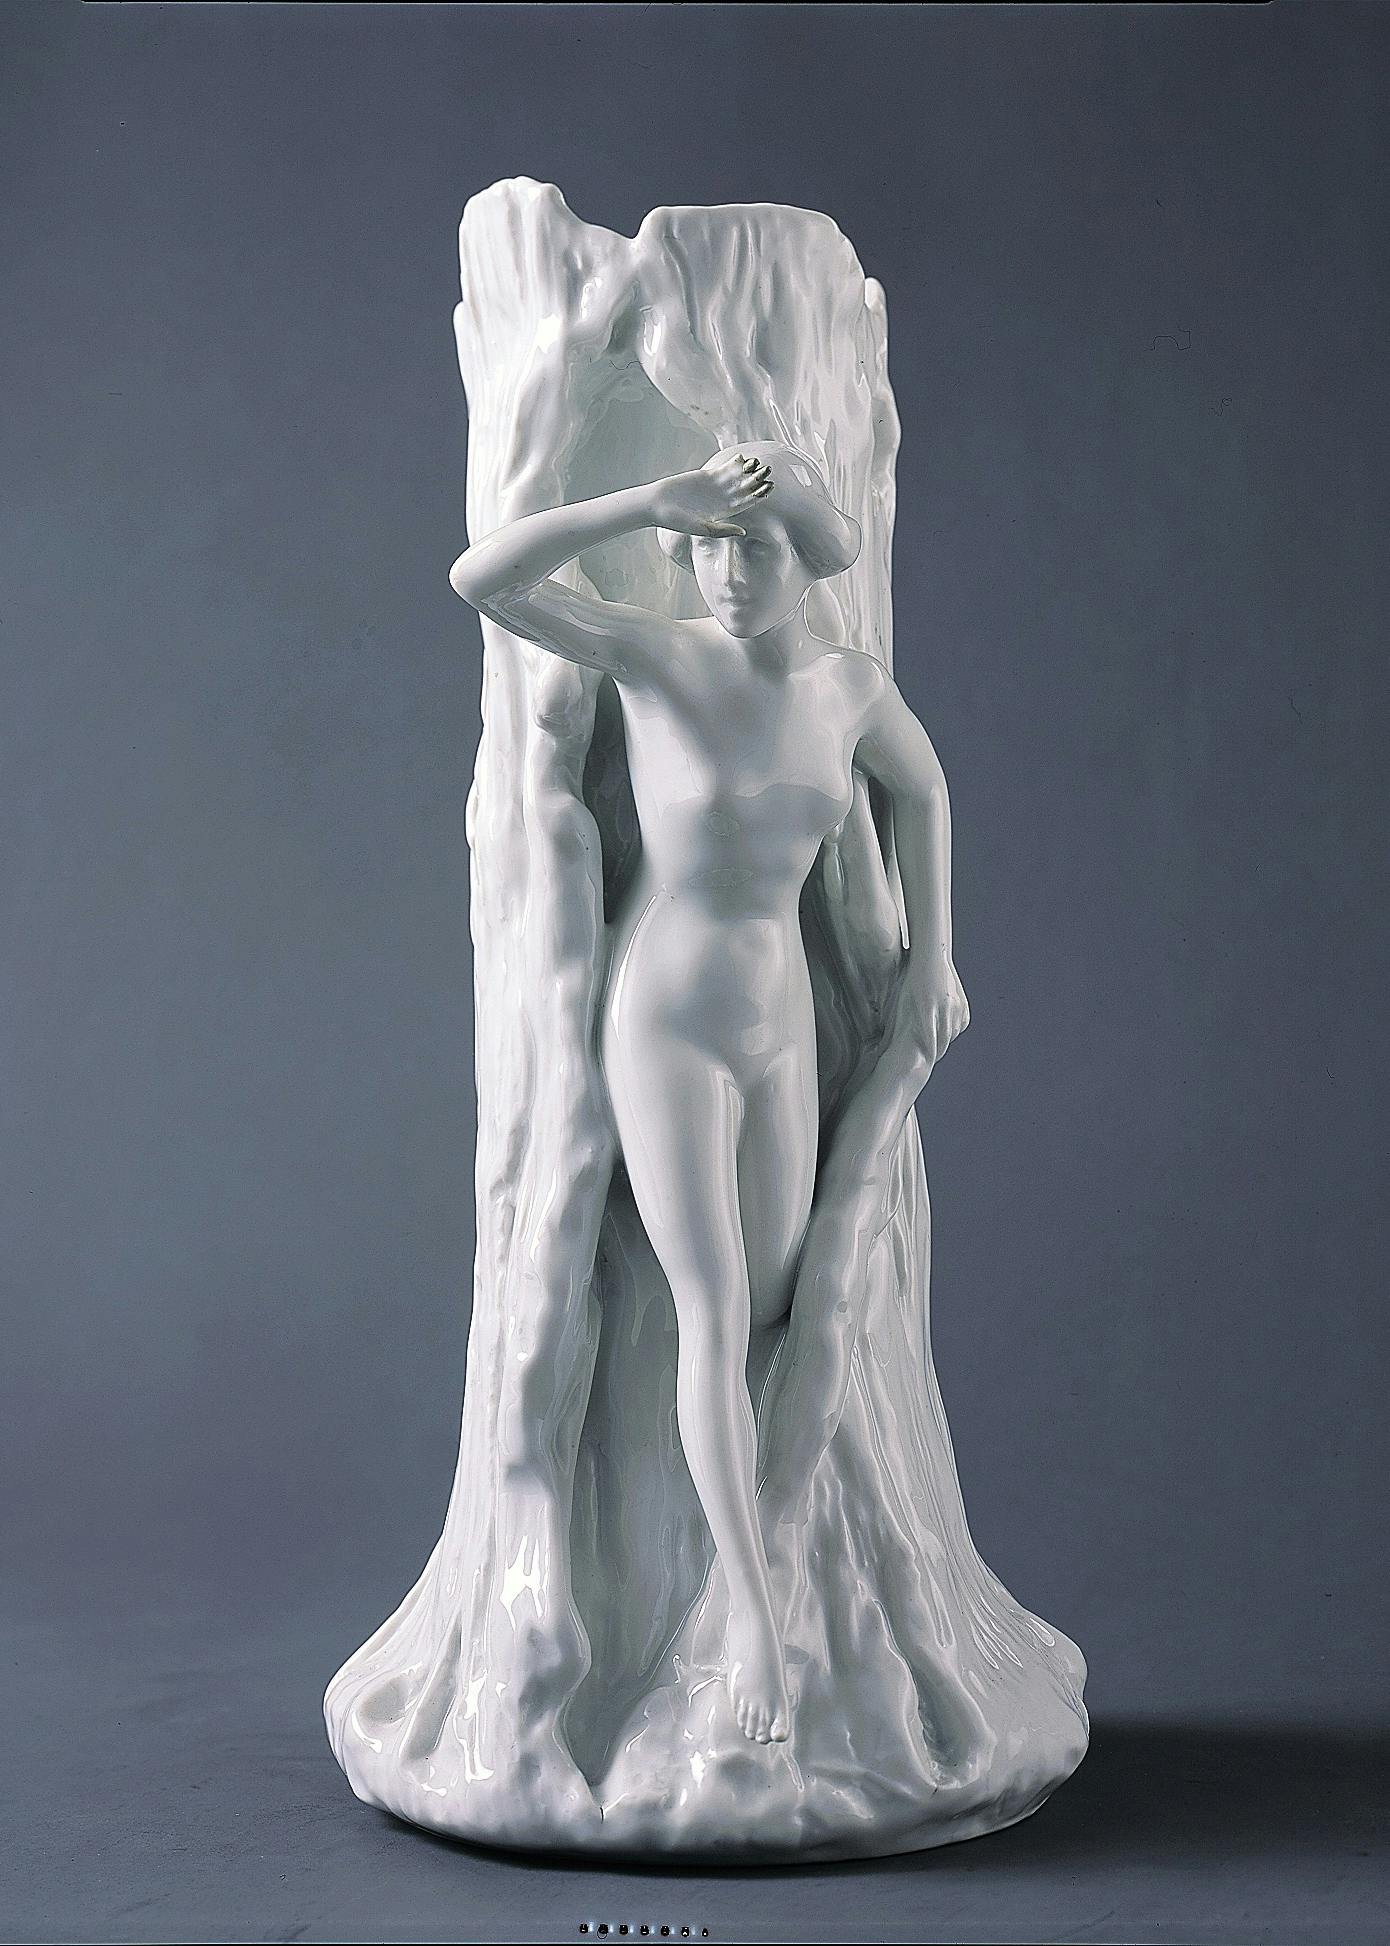 Vaso bianco a forma di tronco con donna nuda che esce dalla corteccia dell'albero